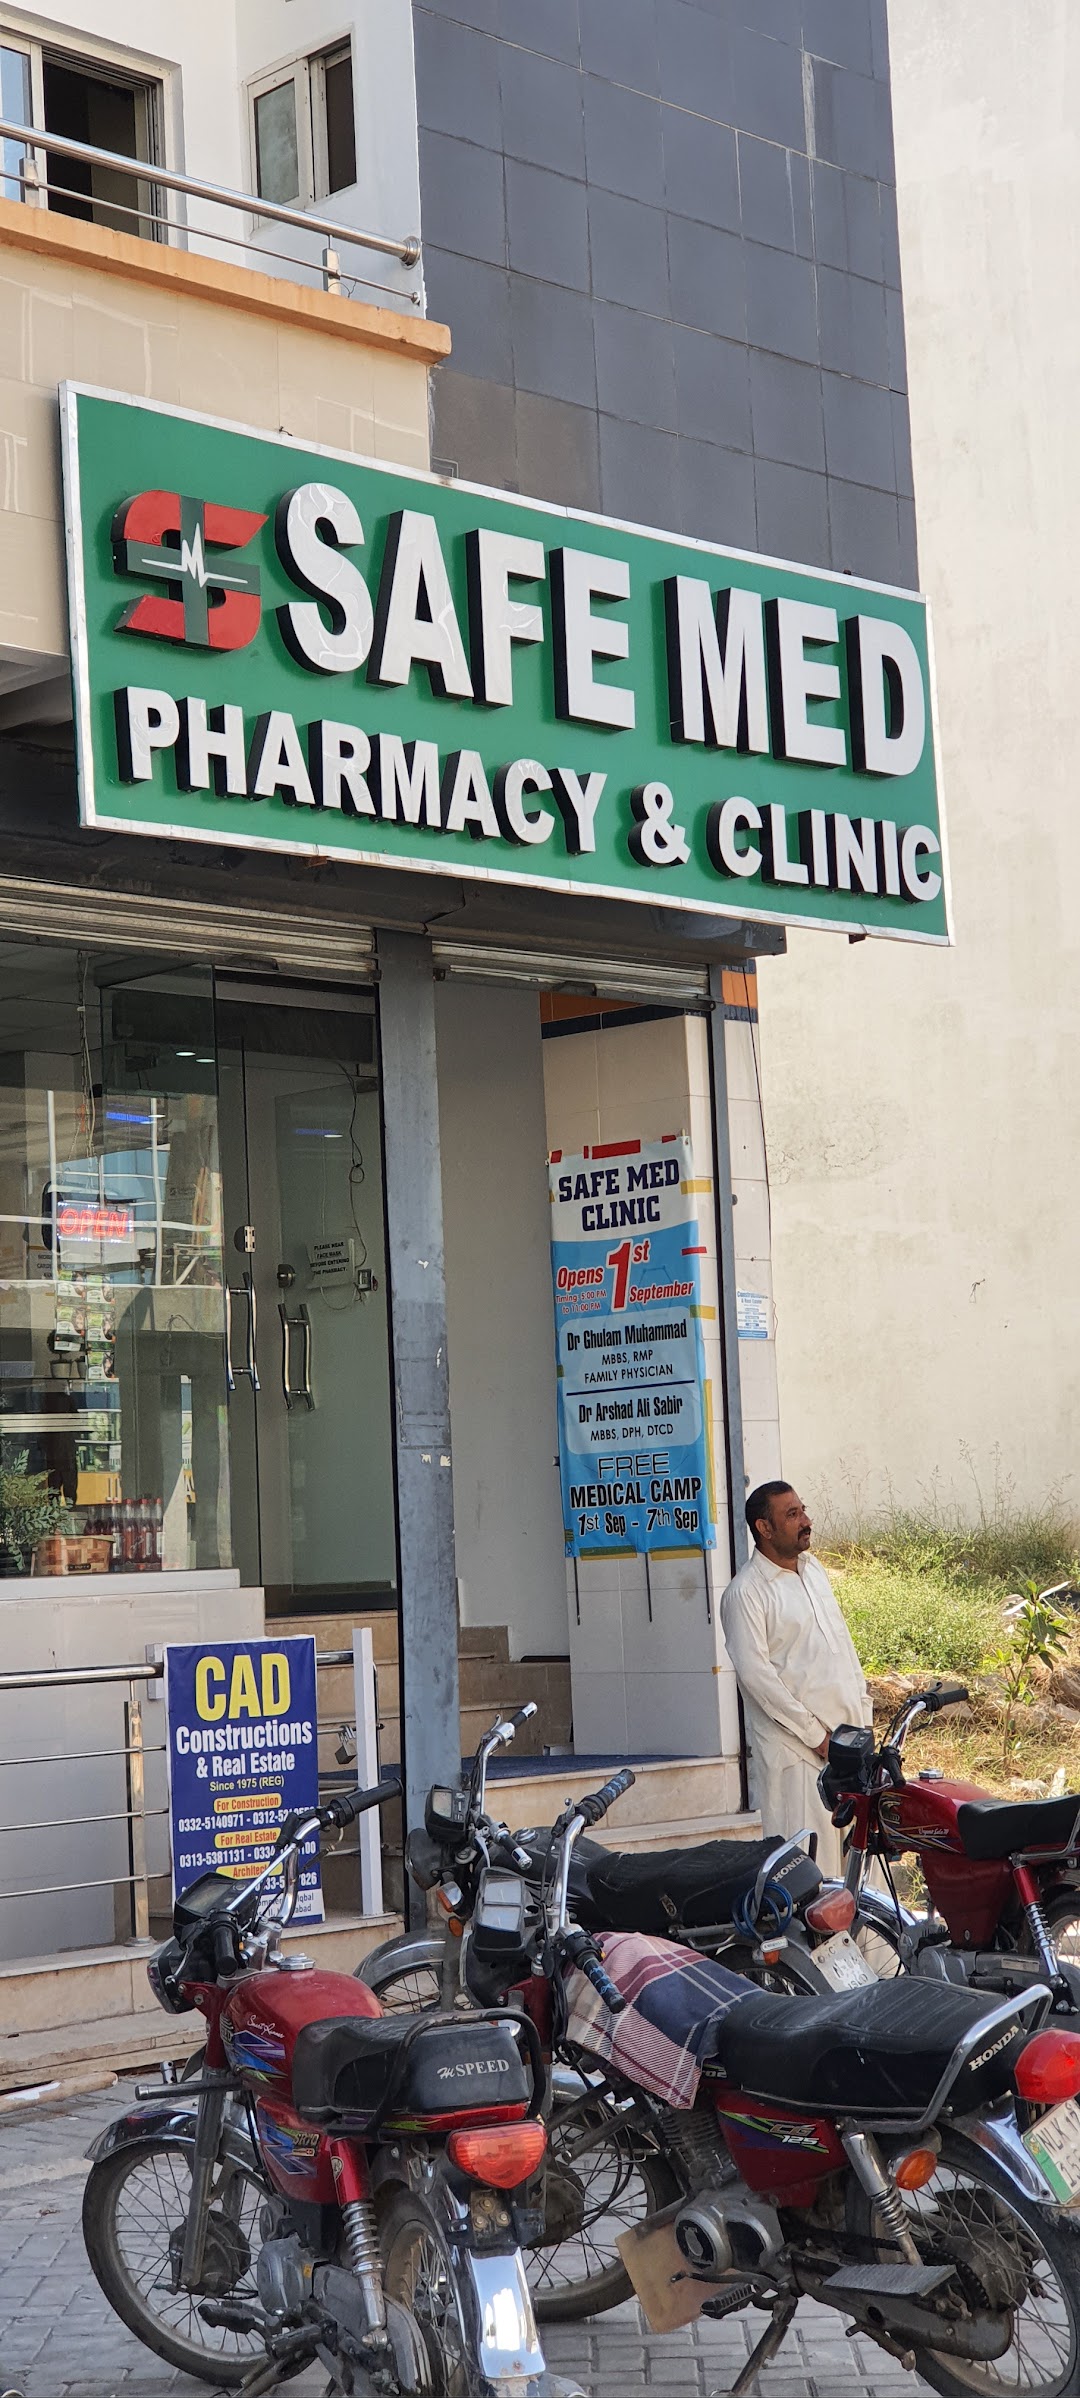 Safemed Pharmacy & Clinic